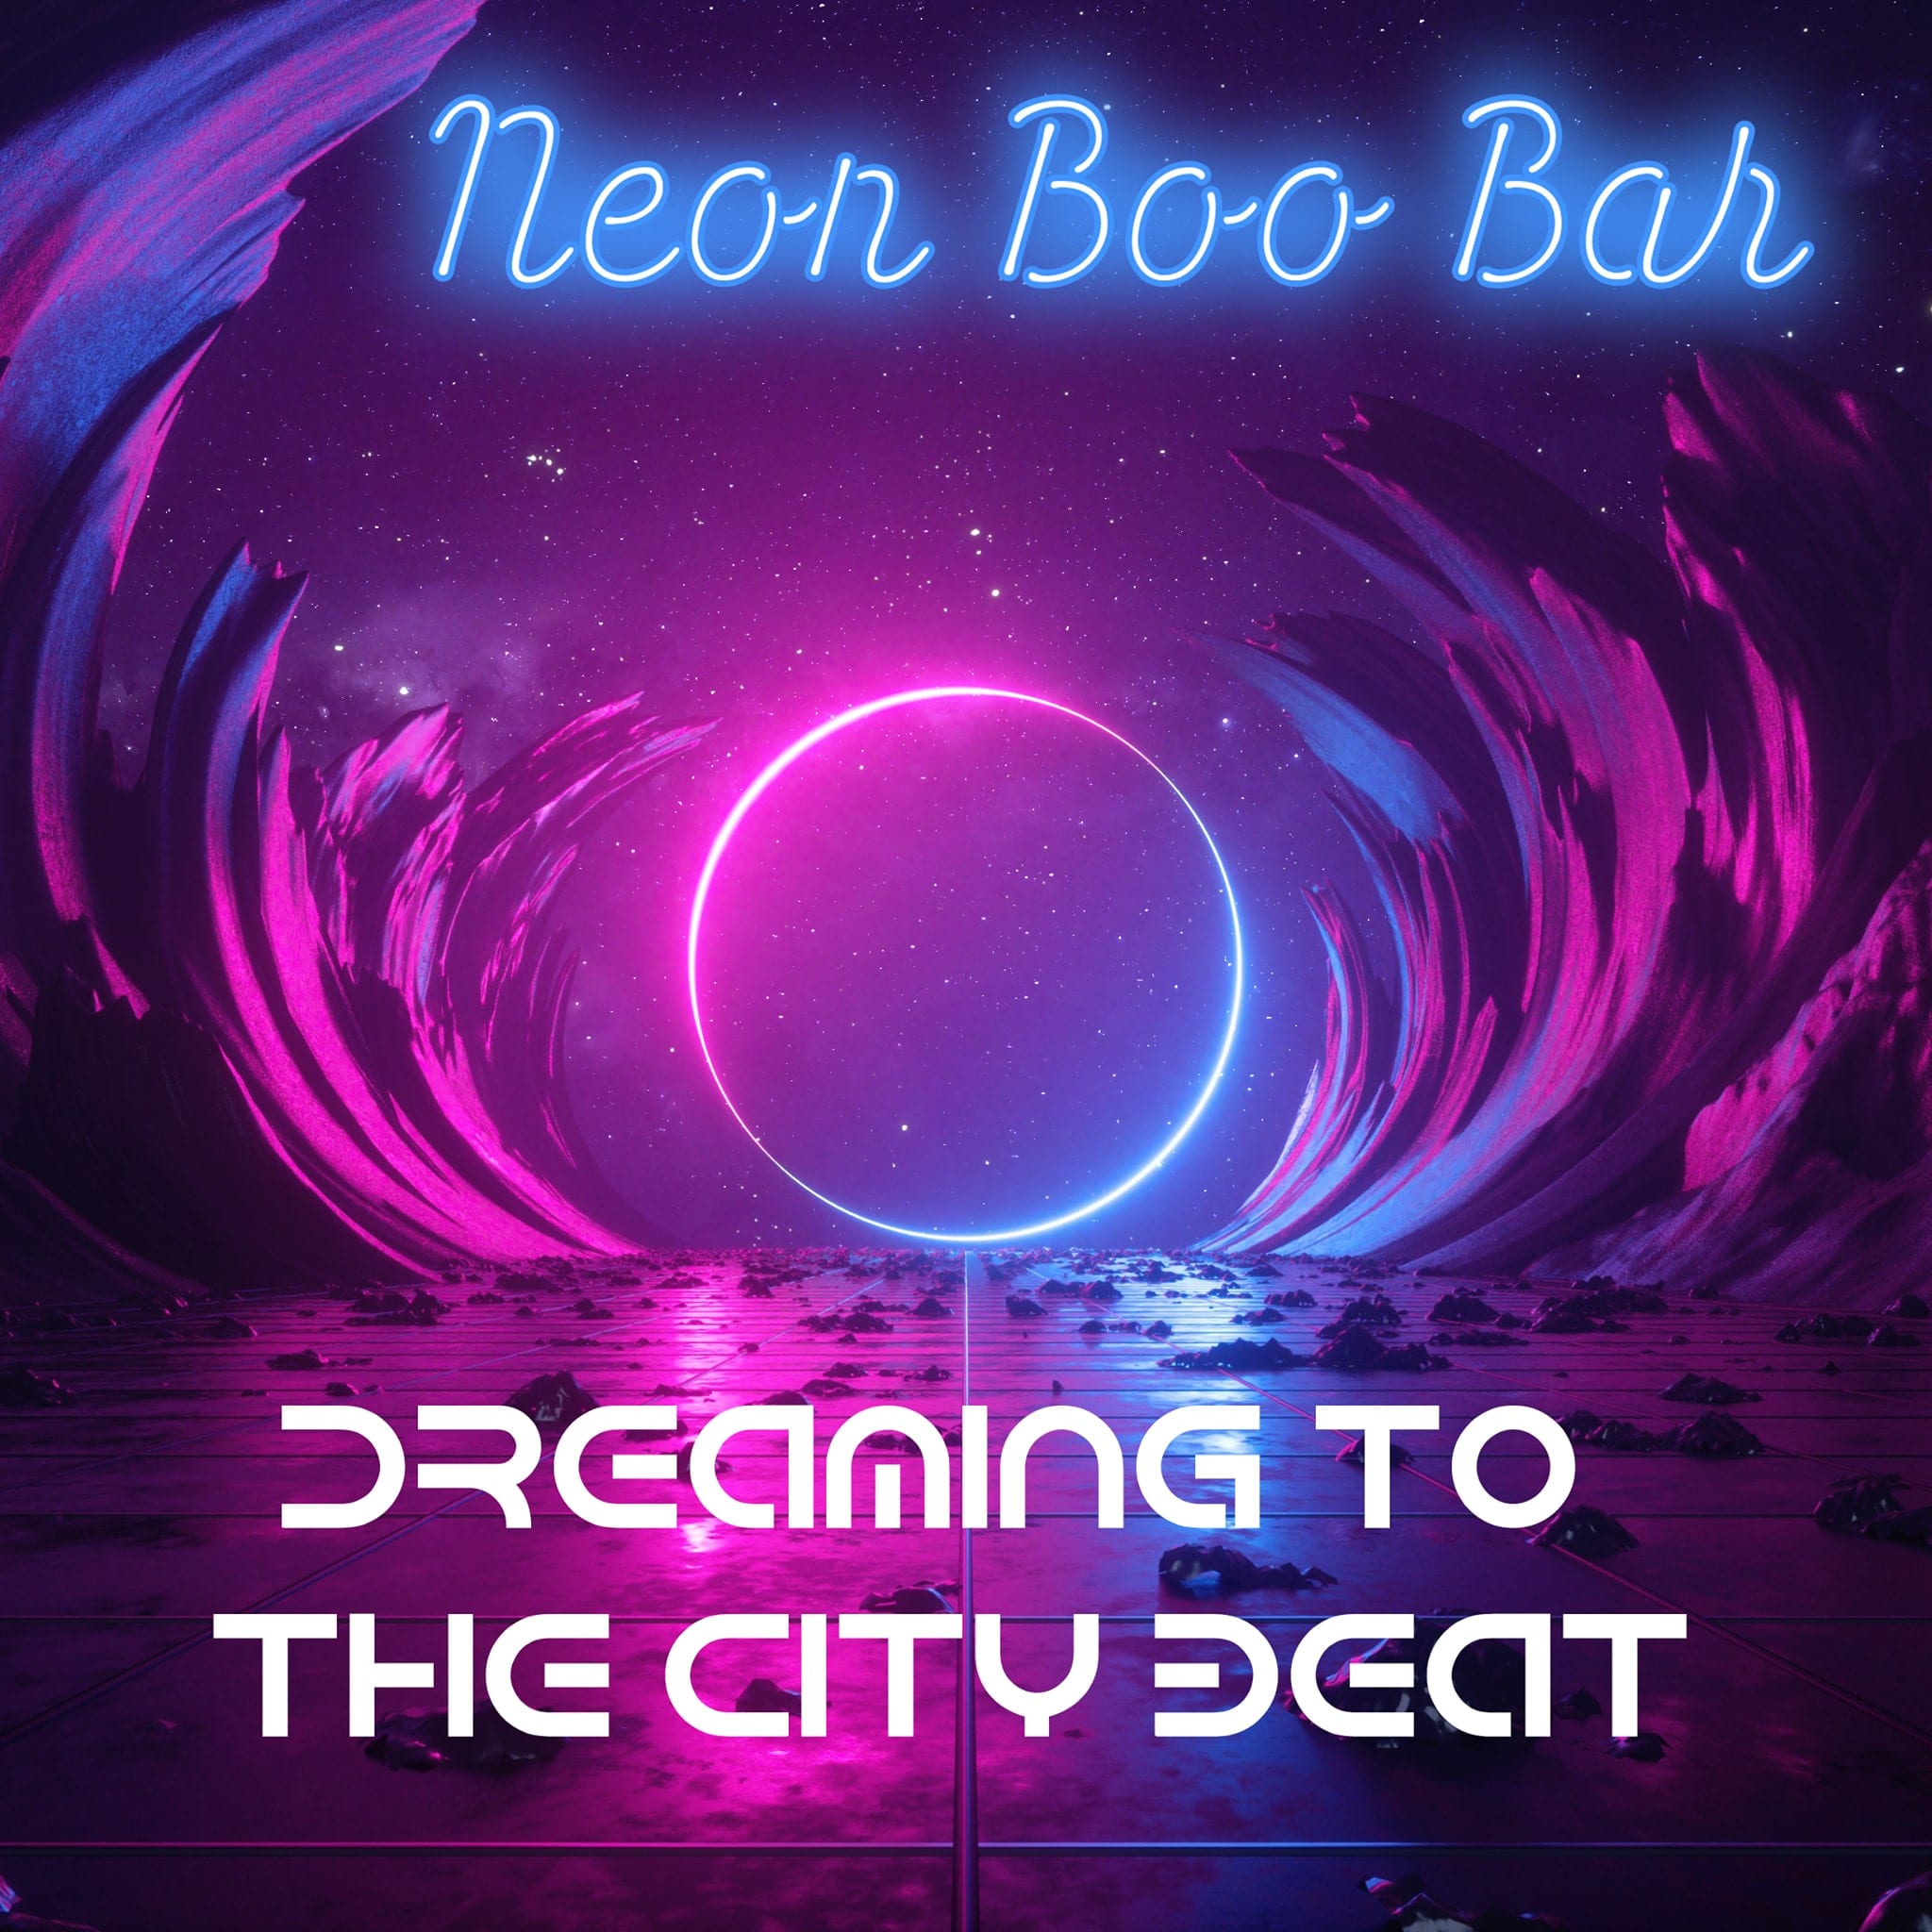 Neon Boo Bar: „Dreaming To The City Beat“ als Single und Video veröffentlicht ?